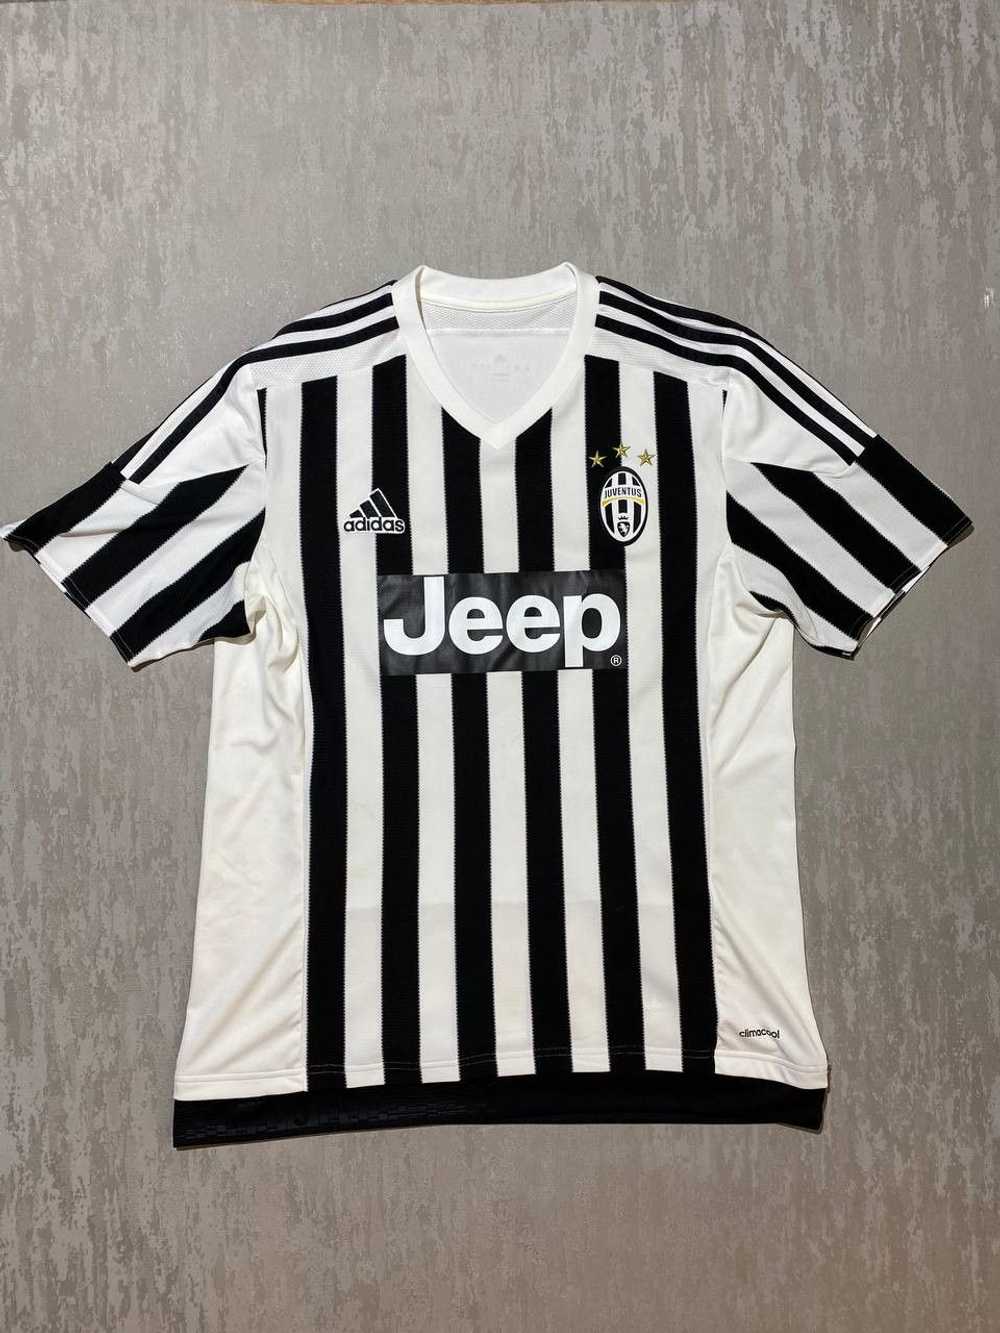 Adidas × Soccer Jersey × Vintage Adidas Juventus … - image 1